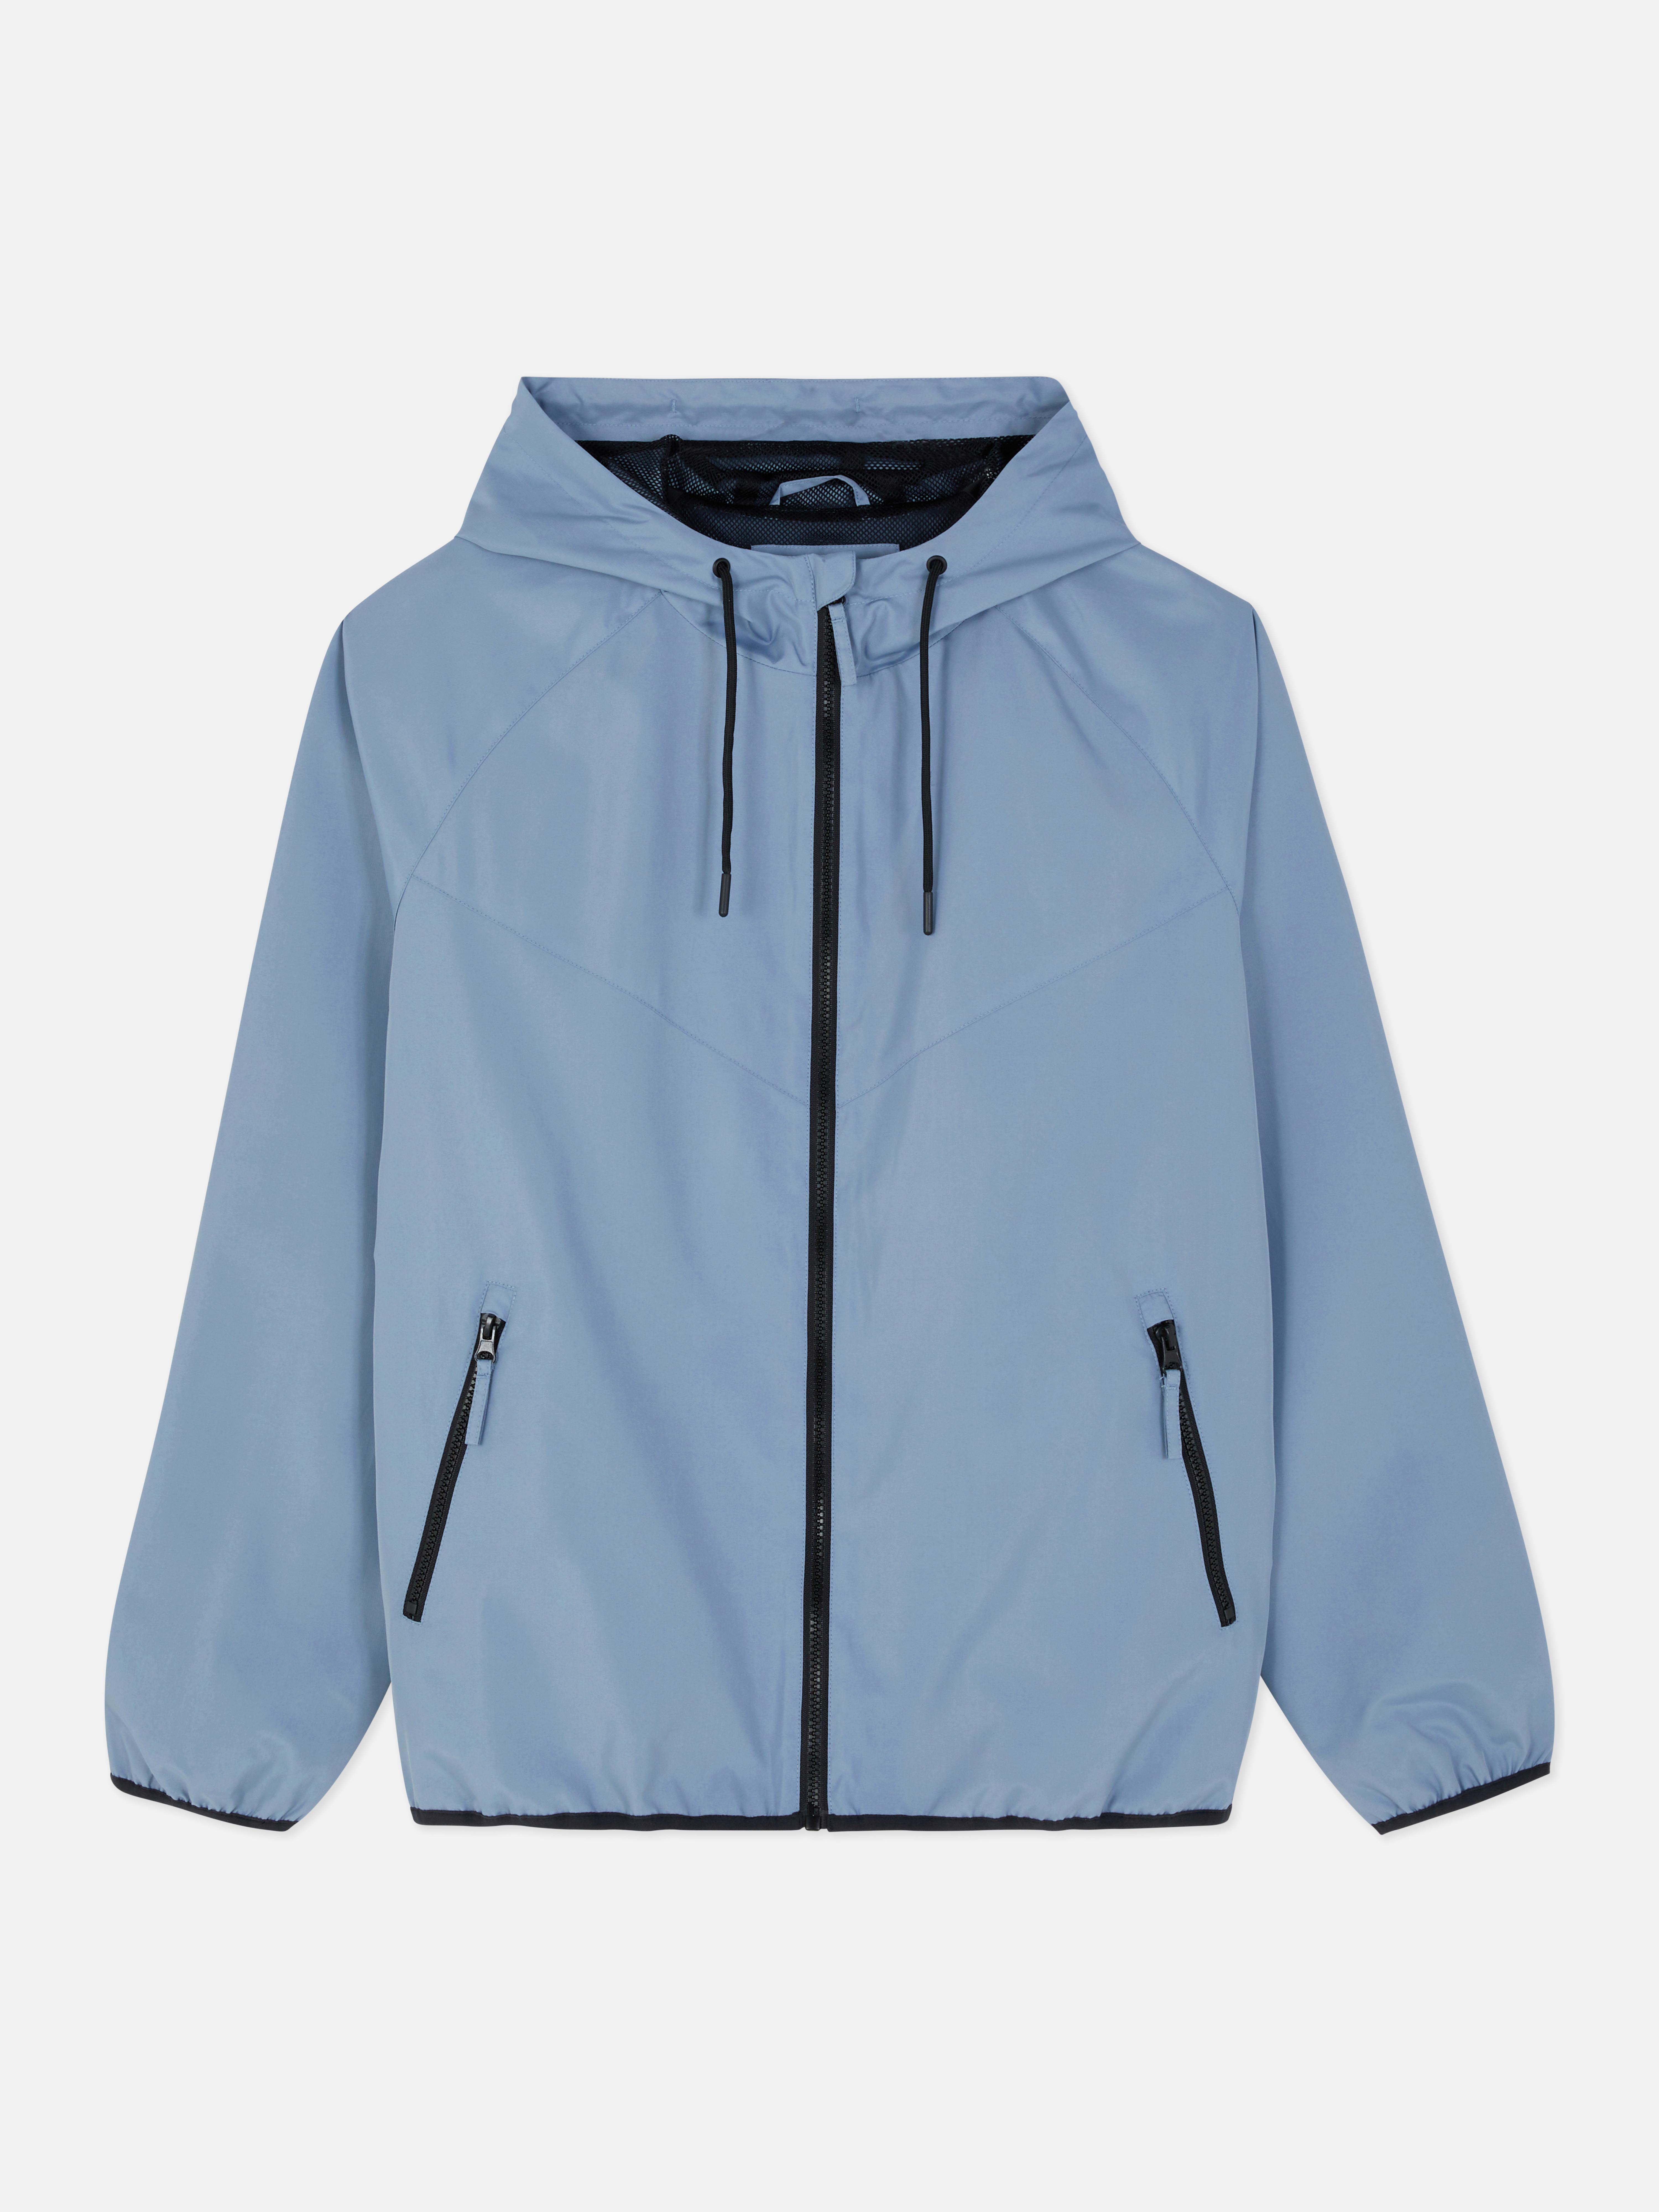 Chaqueta con capucha y cremallera | Abrigos y chaquetas para | Ropa para hombre | Nuestra de moda masculina | Todos los productos Primark | Primark